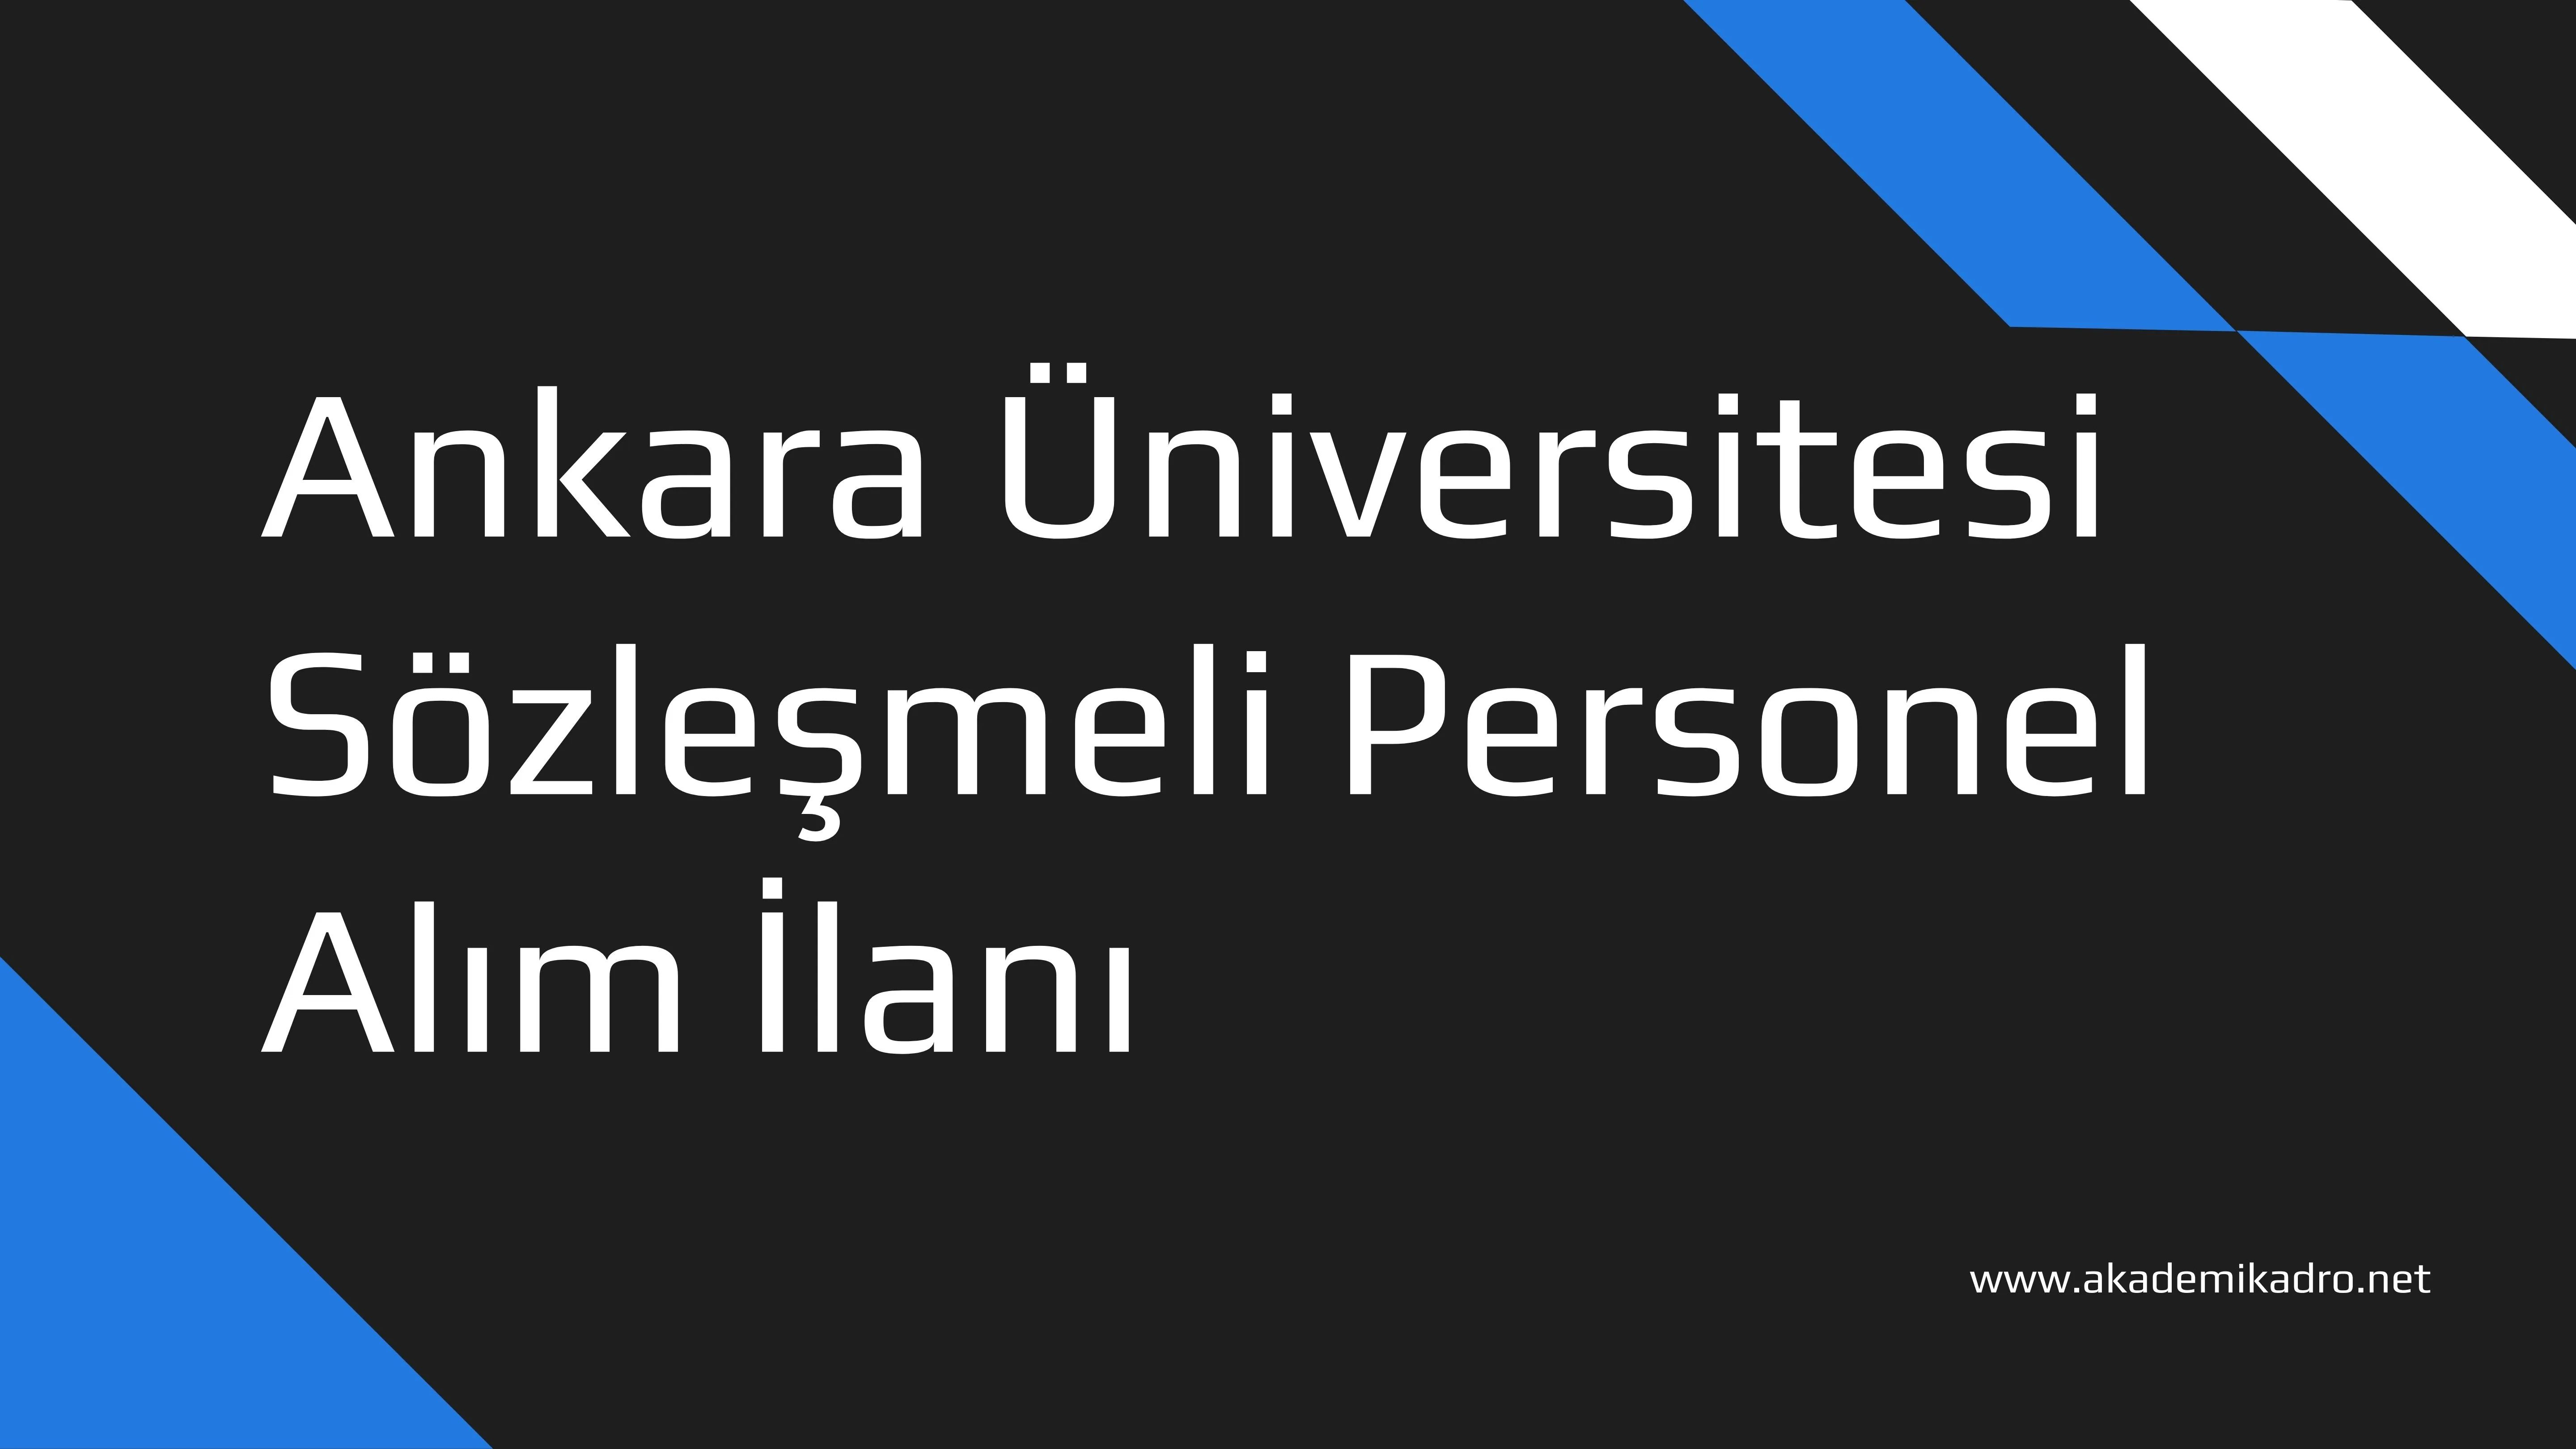 Ankara Üniversitesi KPSS puanıyla 952 Sözleşmeli personel alacak.